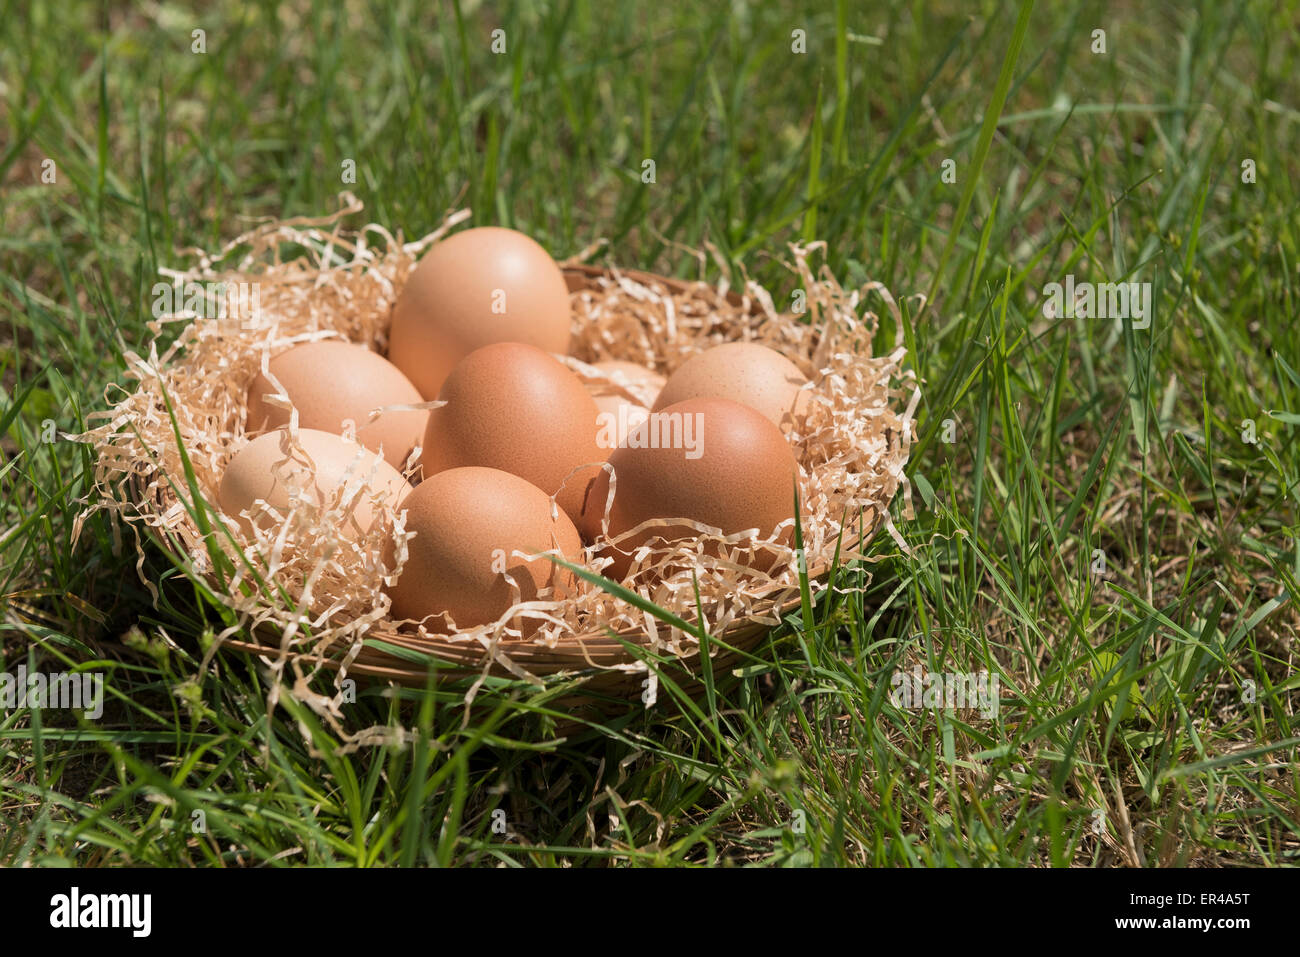 Gruppe von Eiern in Stroh Korb auf Rasen Stockfoto